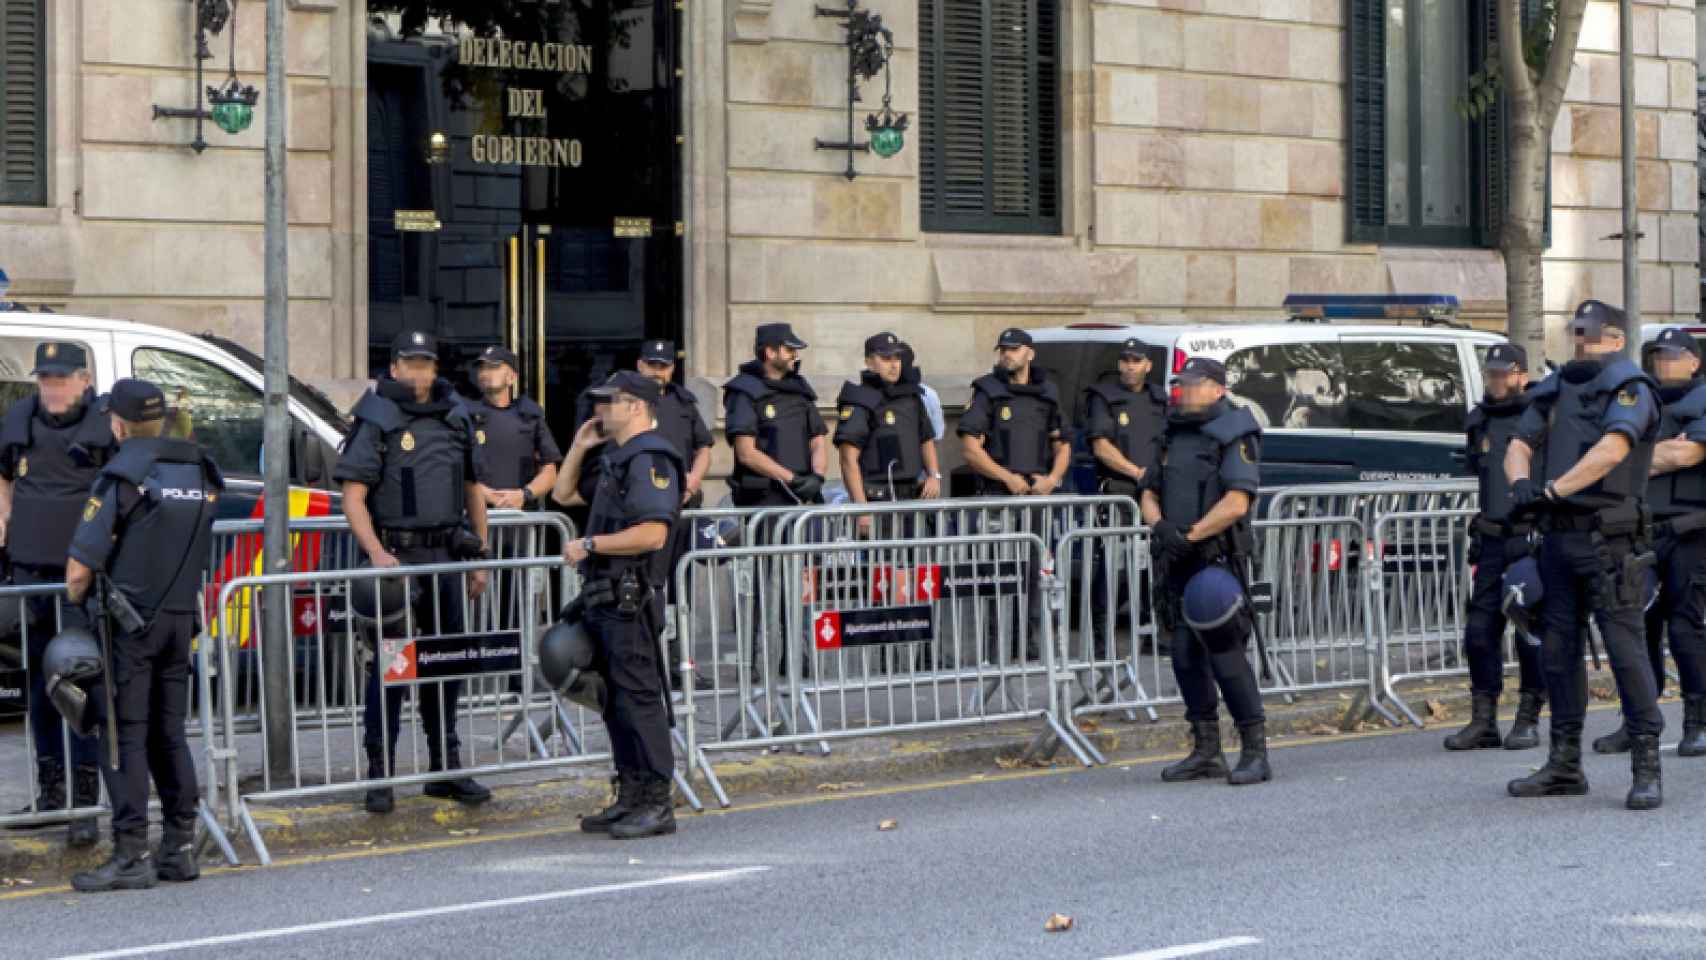 Agentes de la Policía Nacional en la Delegación del Gobierno de Barcelona.